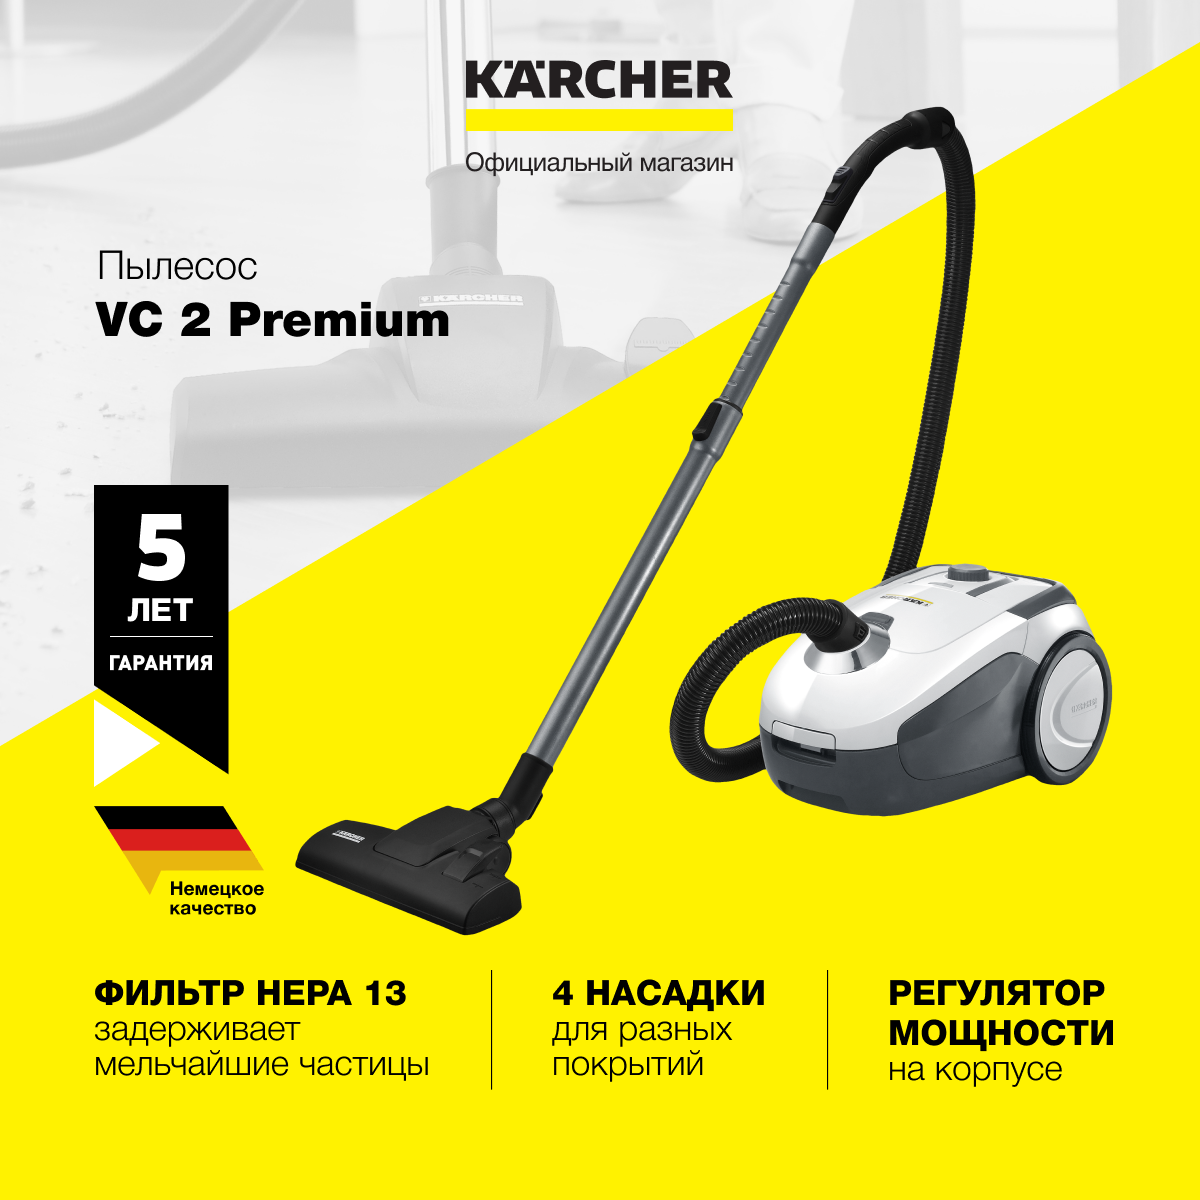 Пылесос karcher vc 2. Мешки для пылесоса Керхер VC 2. Пылесос Керхер vc2 Premium. Пылесос Karcher VC 2 купить.